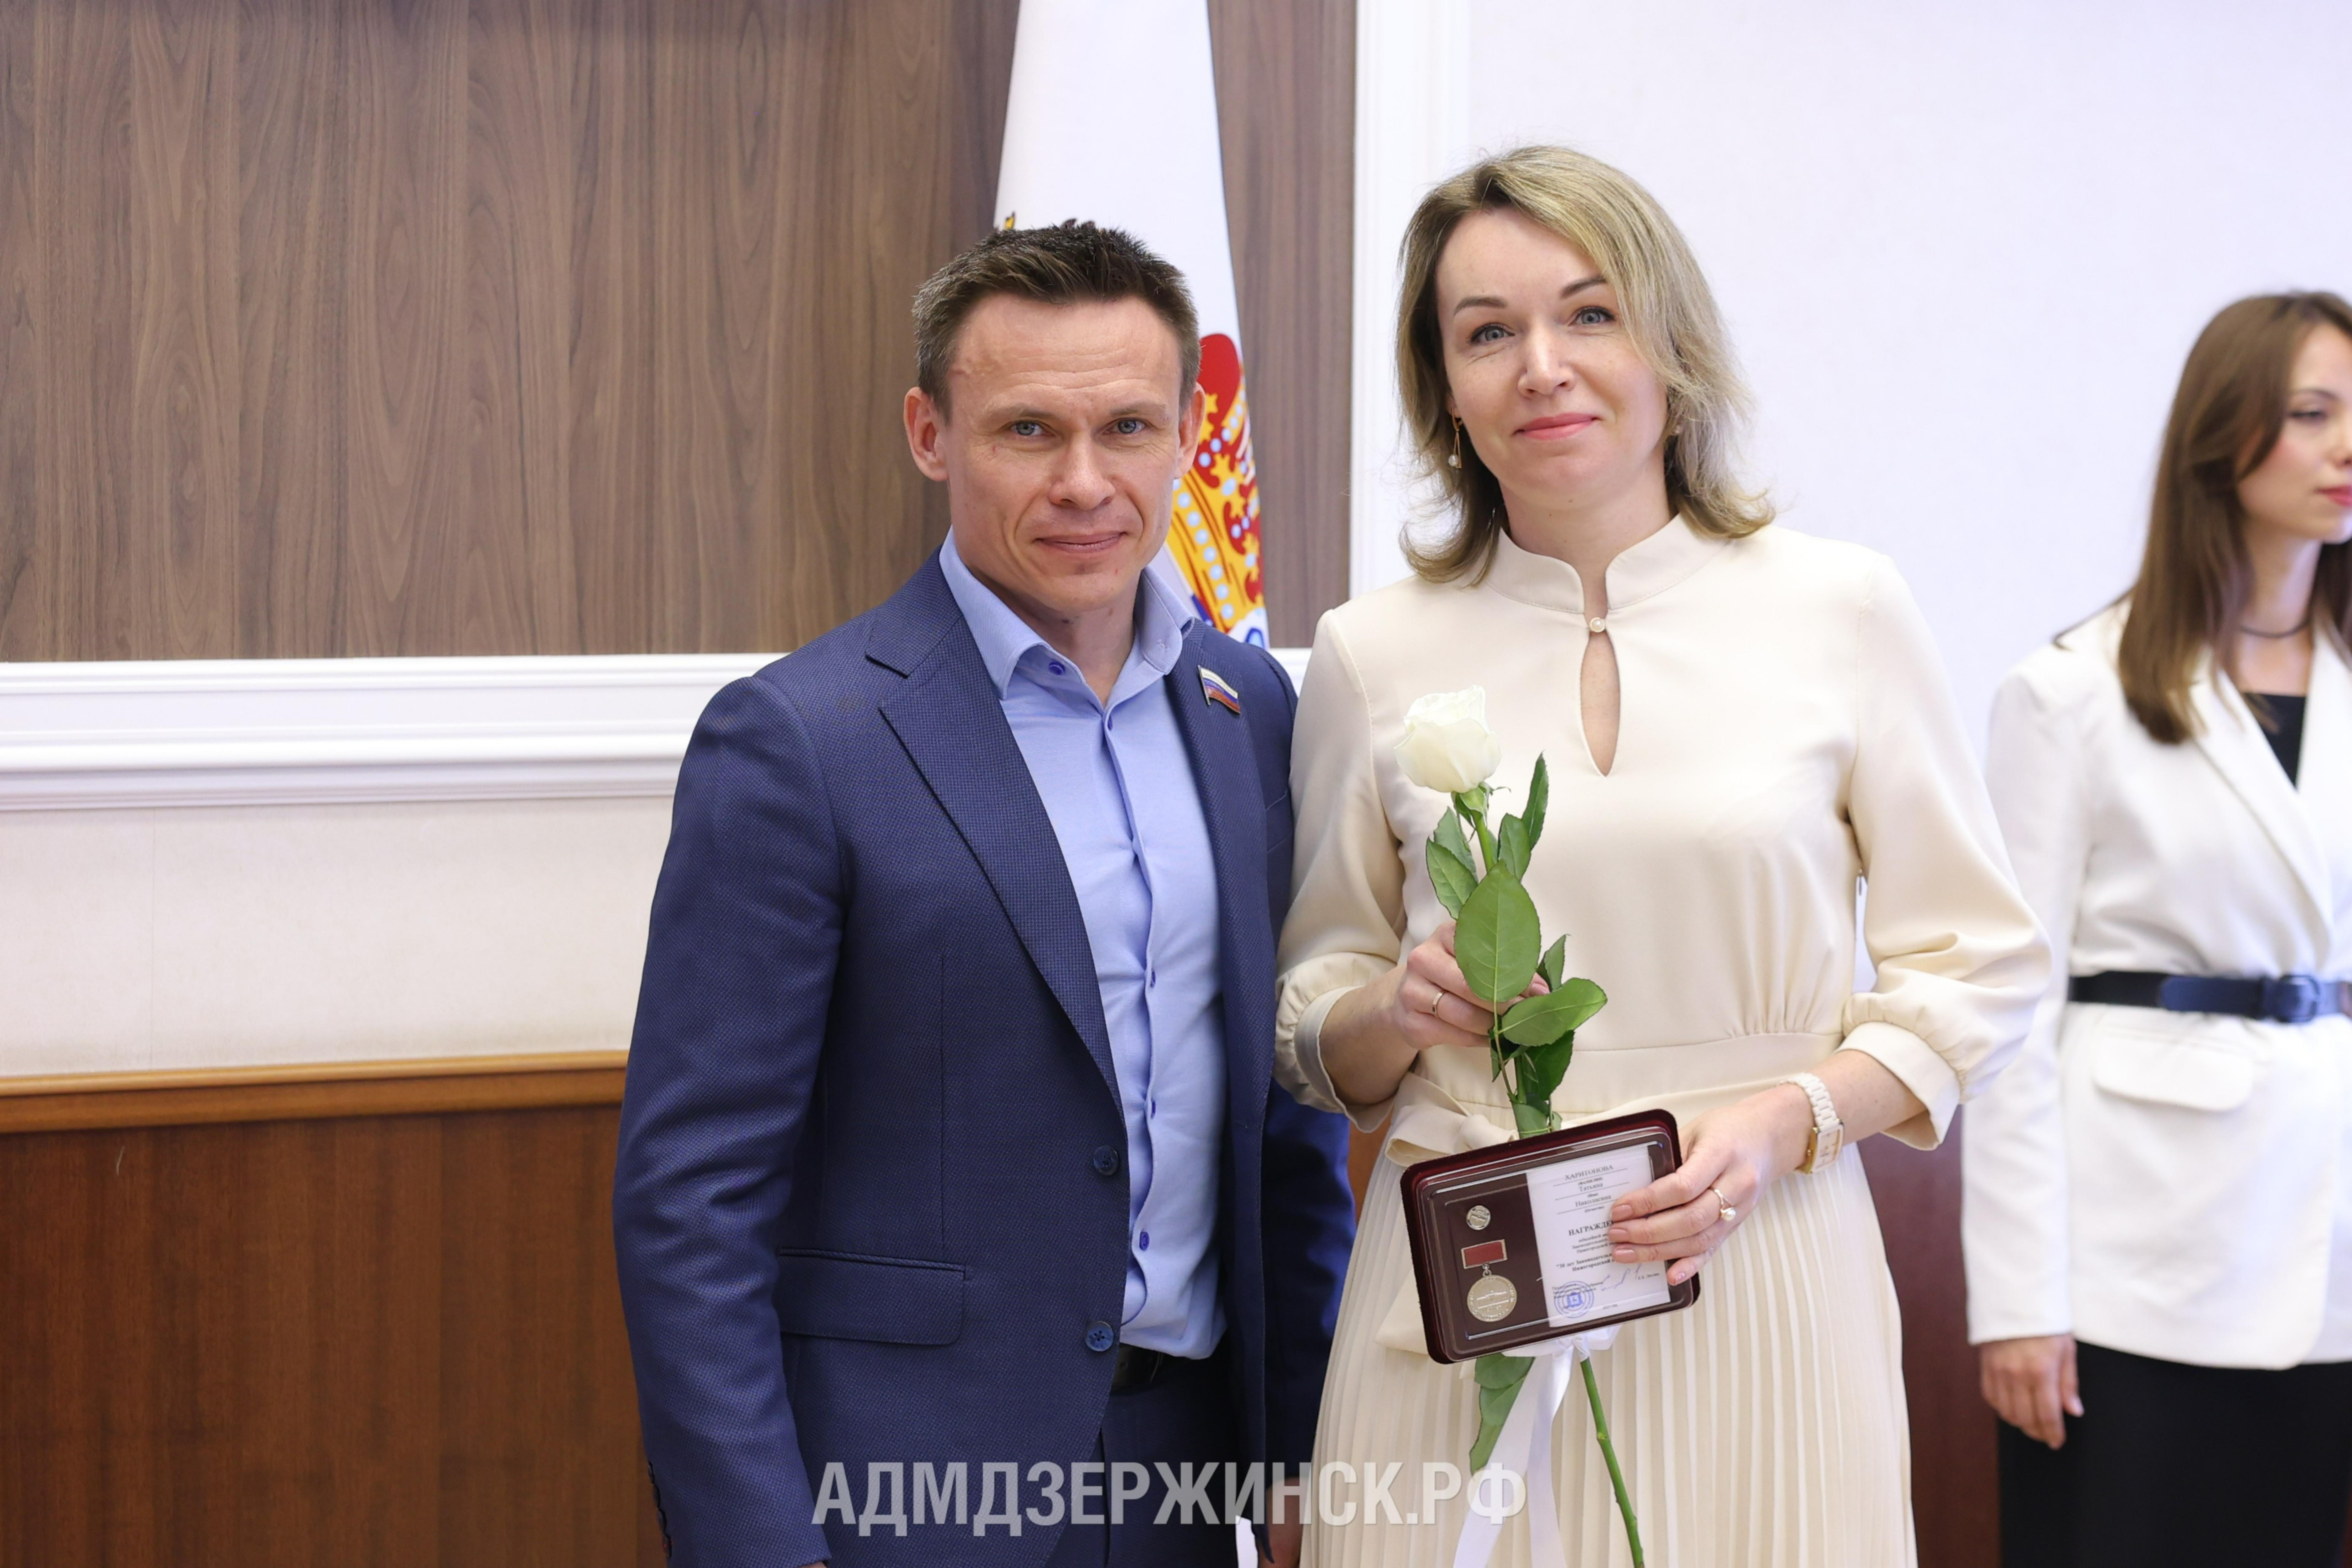 Юбилейные медали к 30-летию Законодательного Собрания Нижегородской области вручены в Дзержинске